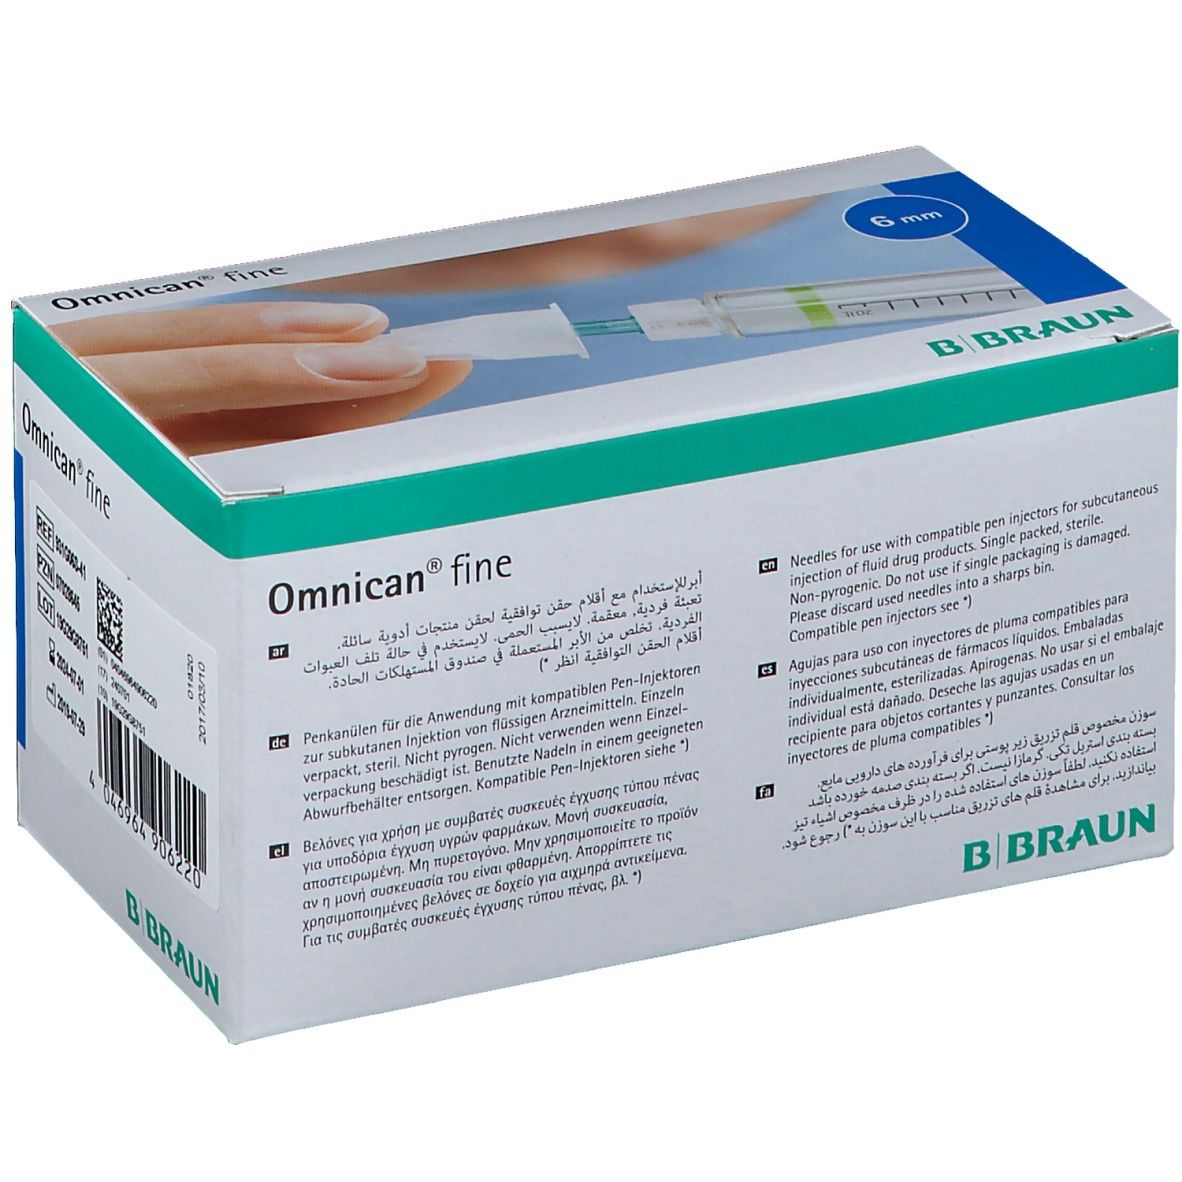 Omnican® fine Penkanüle 31G  0,25 x 6mm